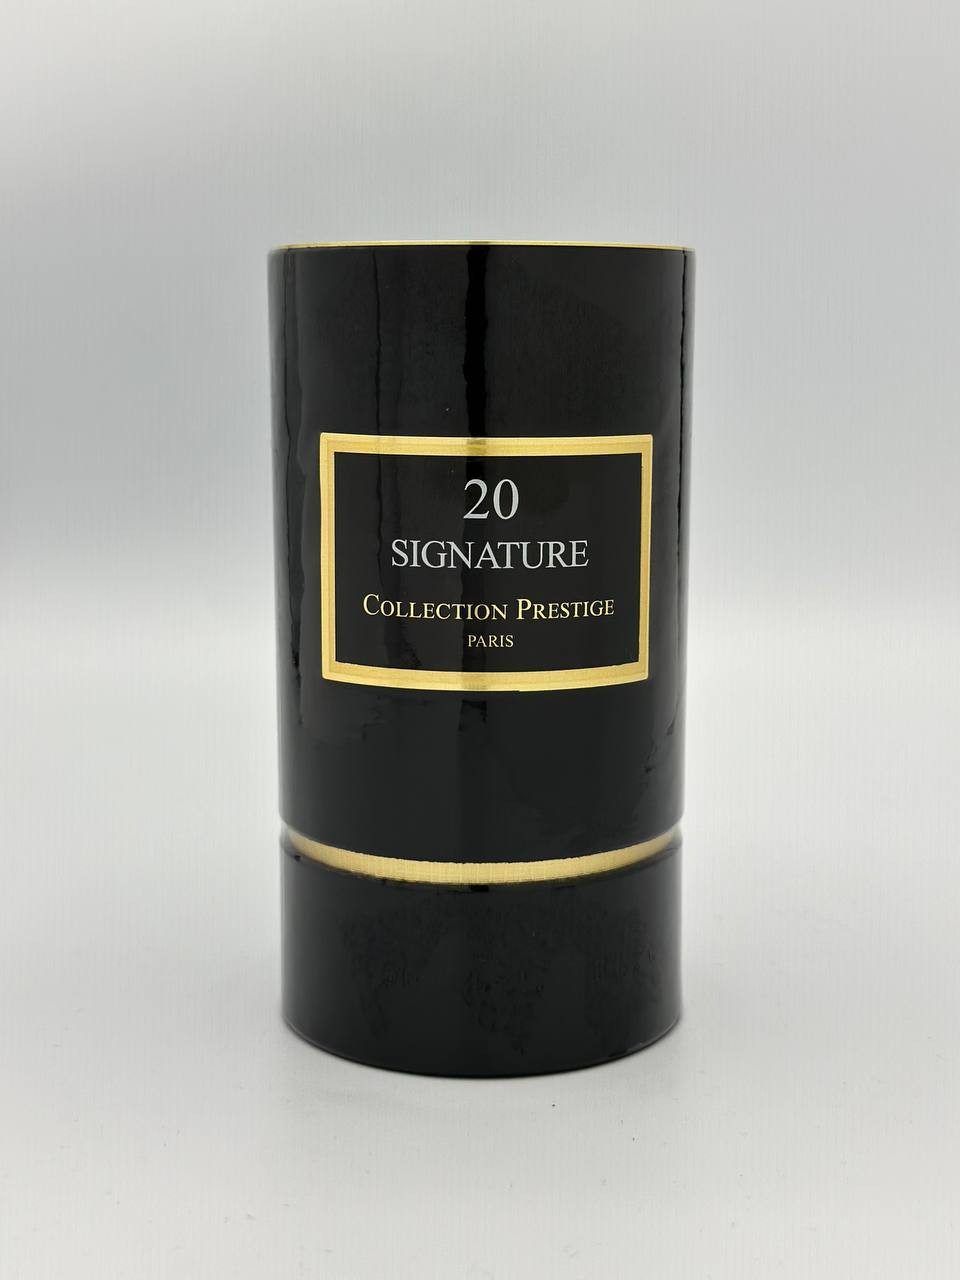 Collection Prestige Eau de Parfum Collection Prestige Paris 20 Signature 50ml Eau de Parfum